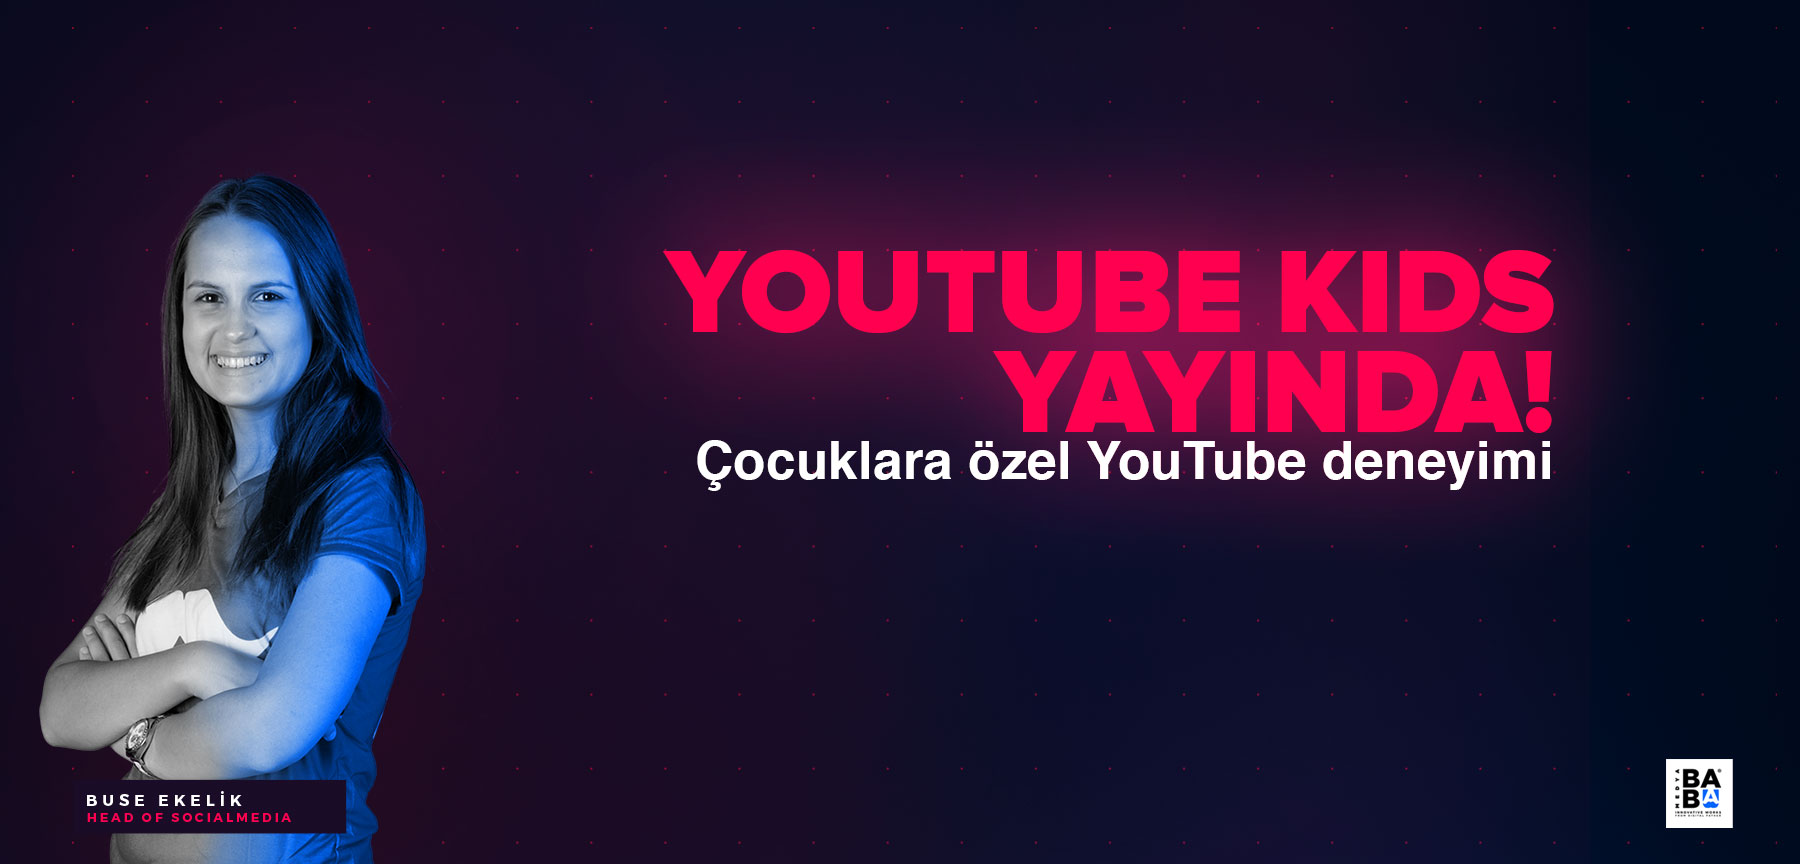 YouTube Kids Yayında!